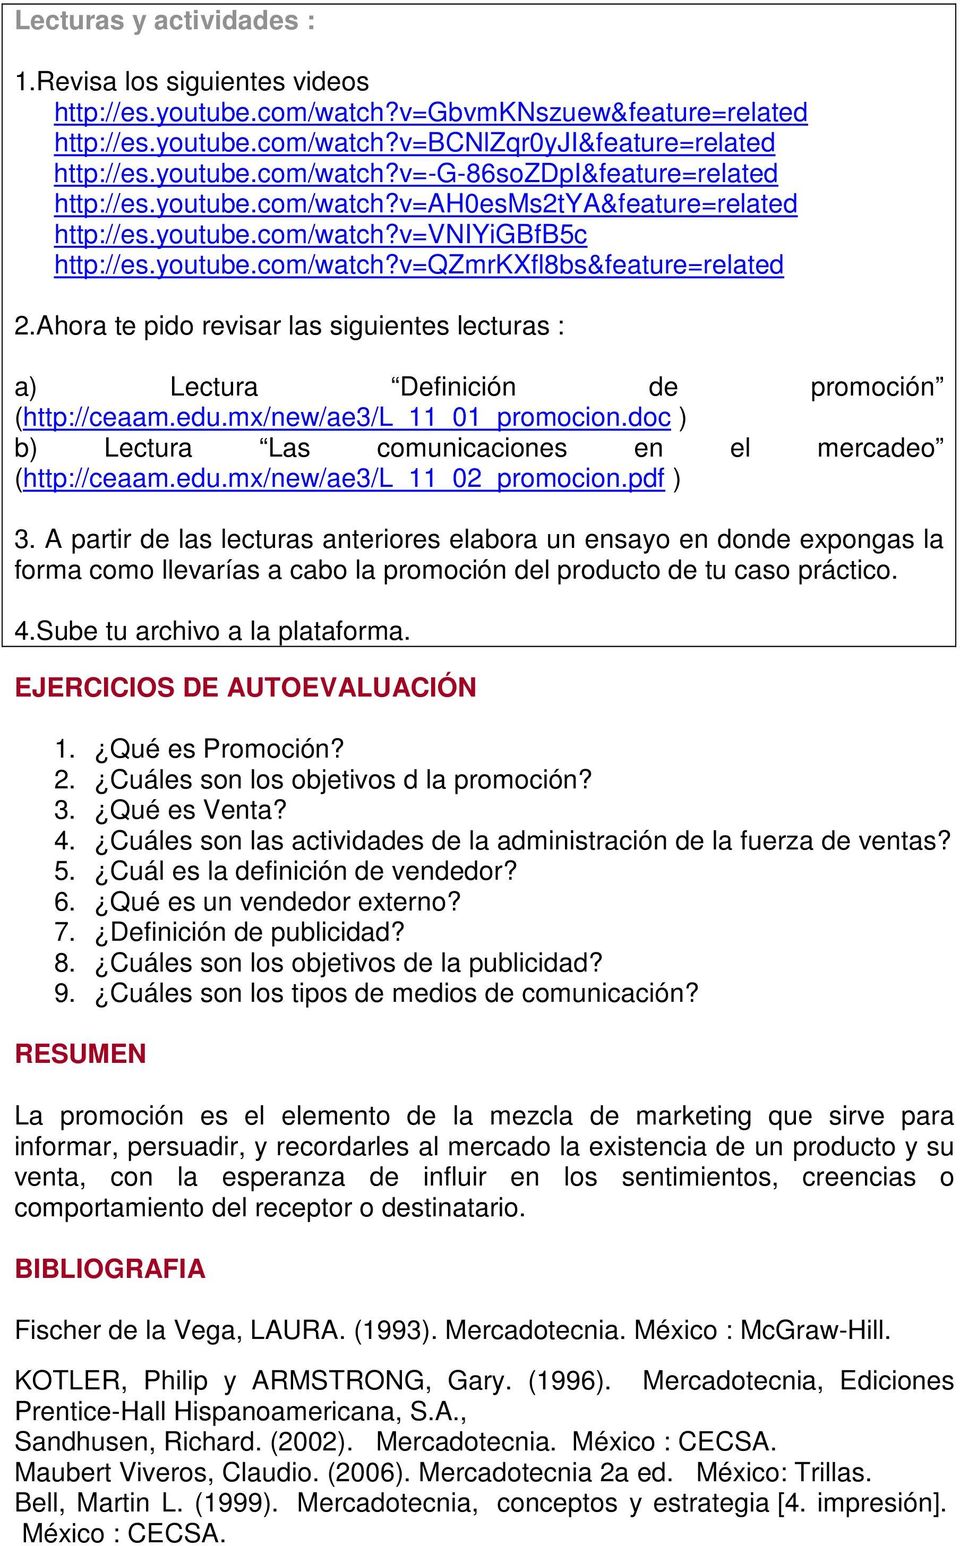 Ahora te pido revisar las siguientes lecturas : a) Lectura Definición de promoción (http://ceaam.edu.mx/new/ae3/l_11_01_promocion.doc ) b) Lectura Las comunicaciones en el mercadeo (http://ceaam.edu.mx/new/ae3/l_11_02_promocion.